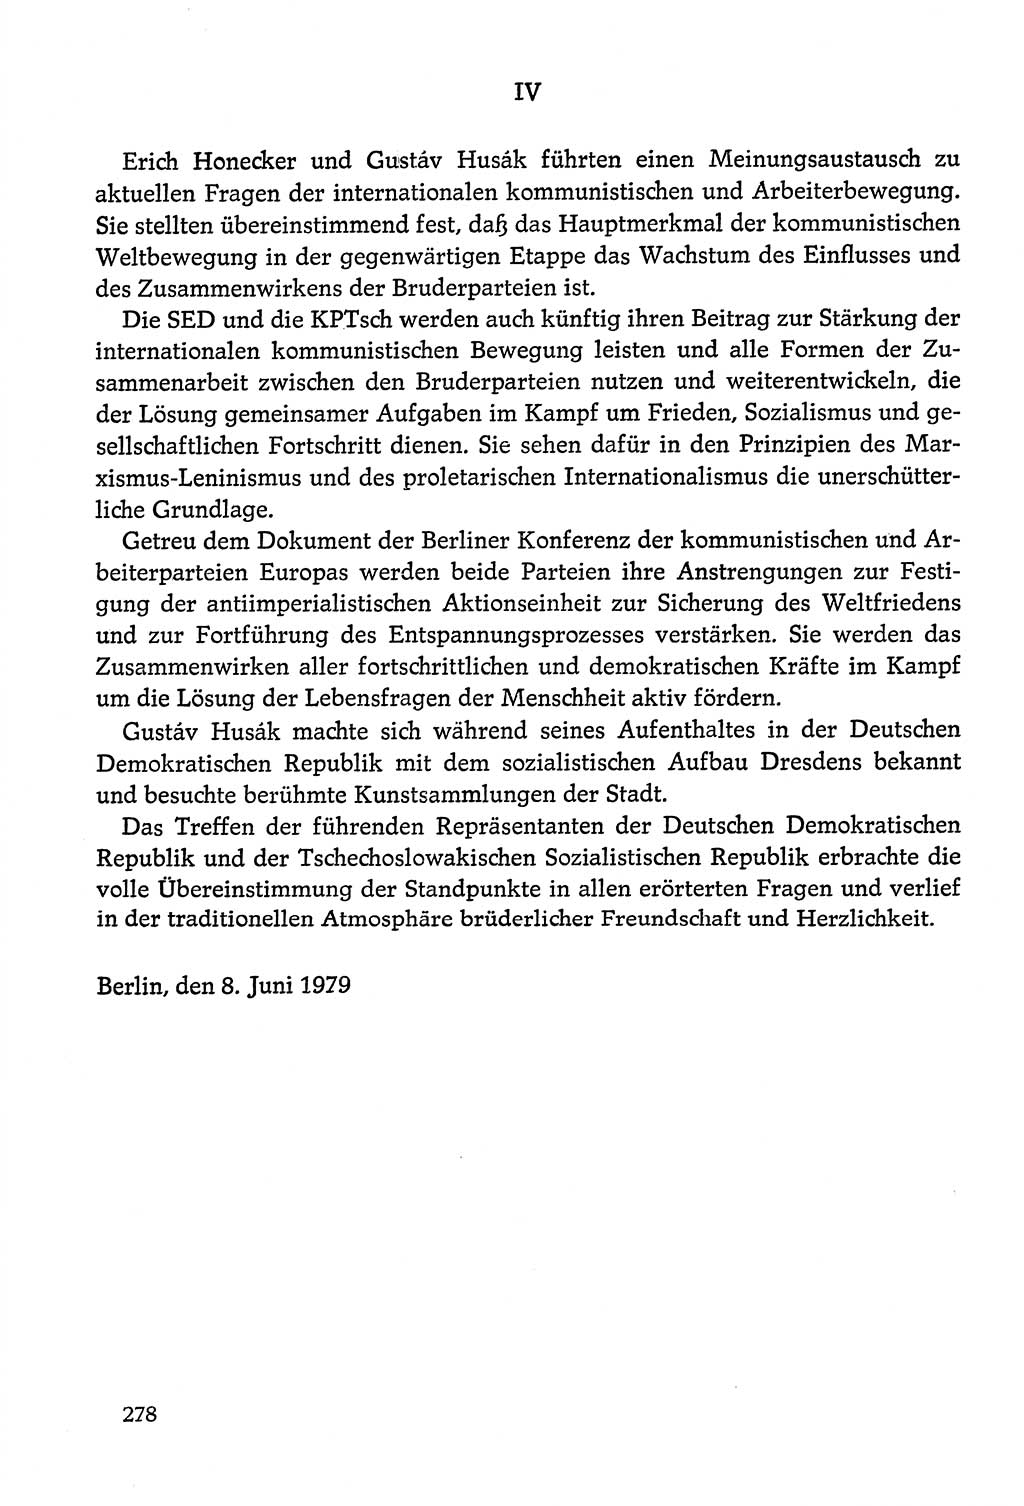 Dokumente der Sozialistischen Einheitspartei Deutschlands (SED) [Deutsche Demokratische Republik (DDR)] 1978-1979, Seite 278 (Dok. SED DDR 1978-1979, S. 278)